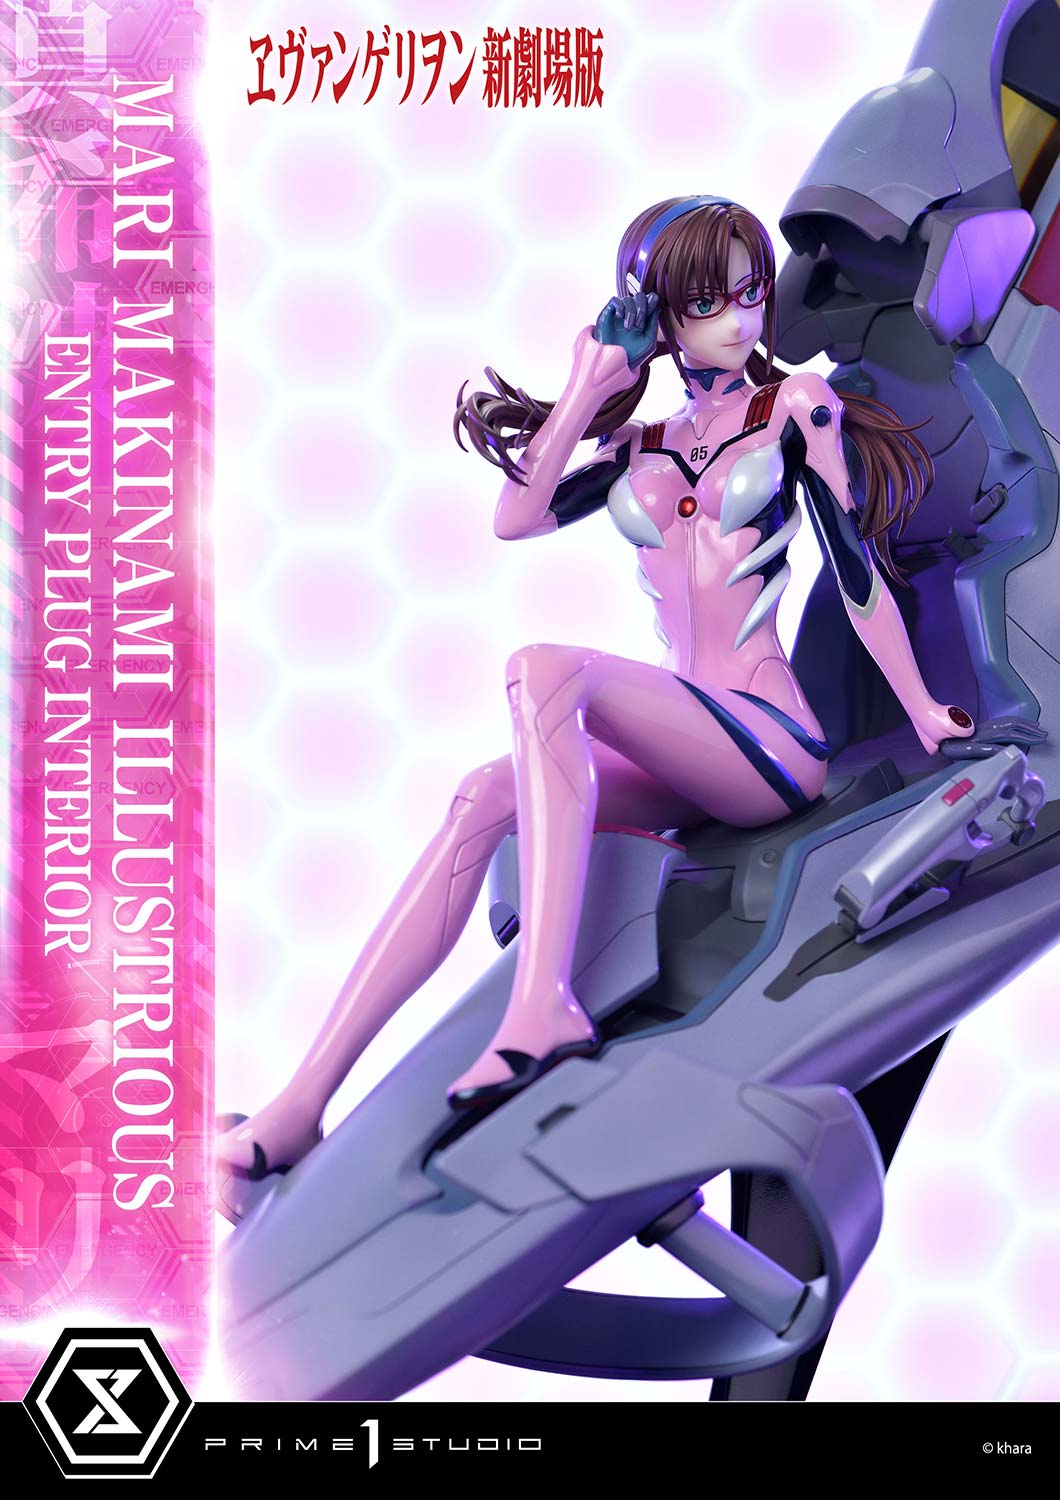 Ultimate Premium Masterline "Rebuild of Evangelion" Makinami Mari Illustrious (Entry Plug Interior) | animota